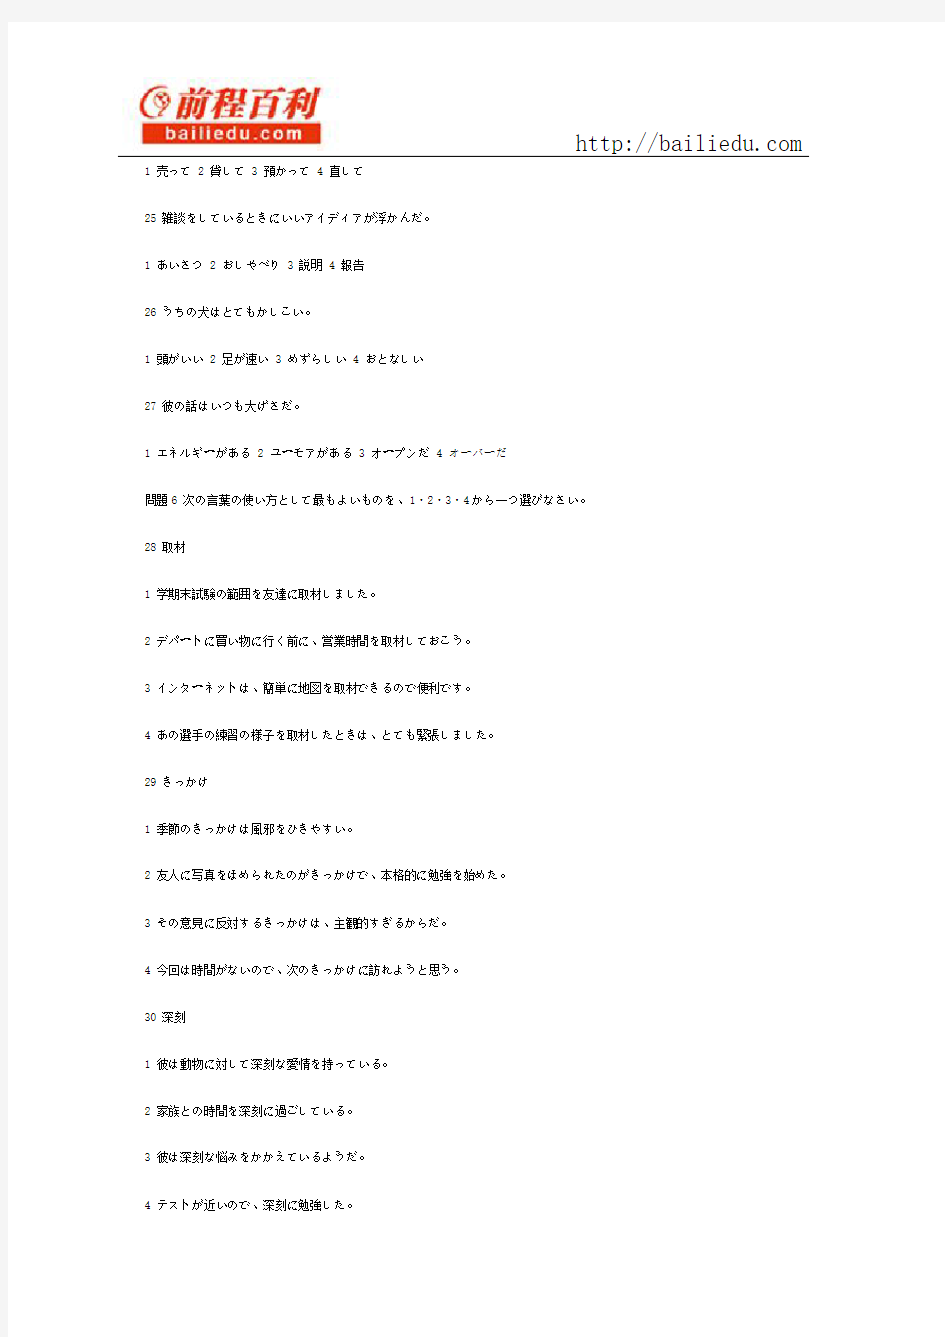 2010年7月日语能力考二级真题文字部分02